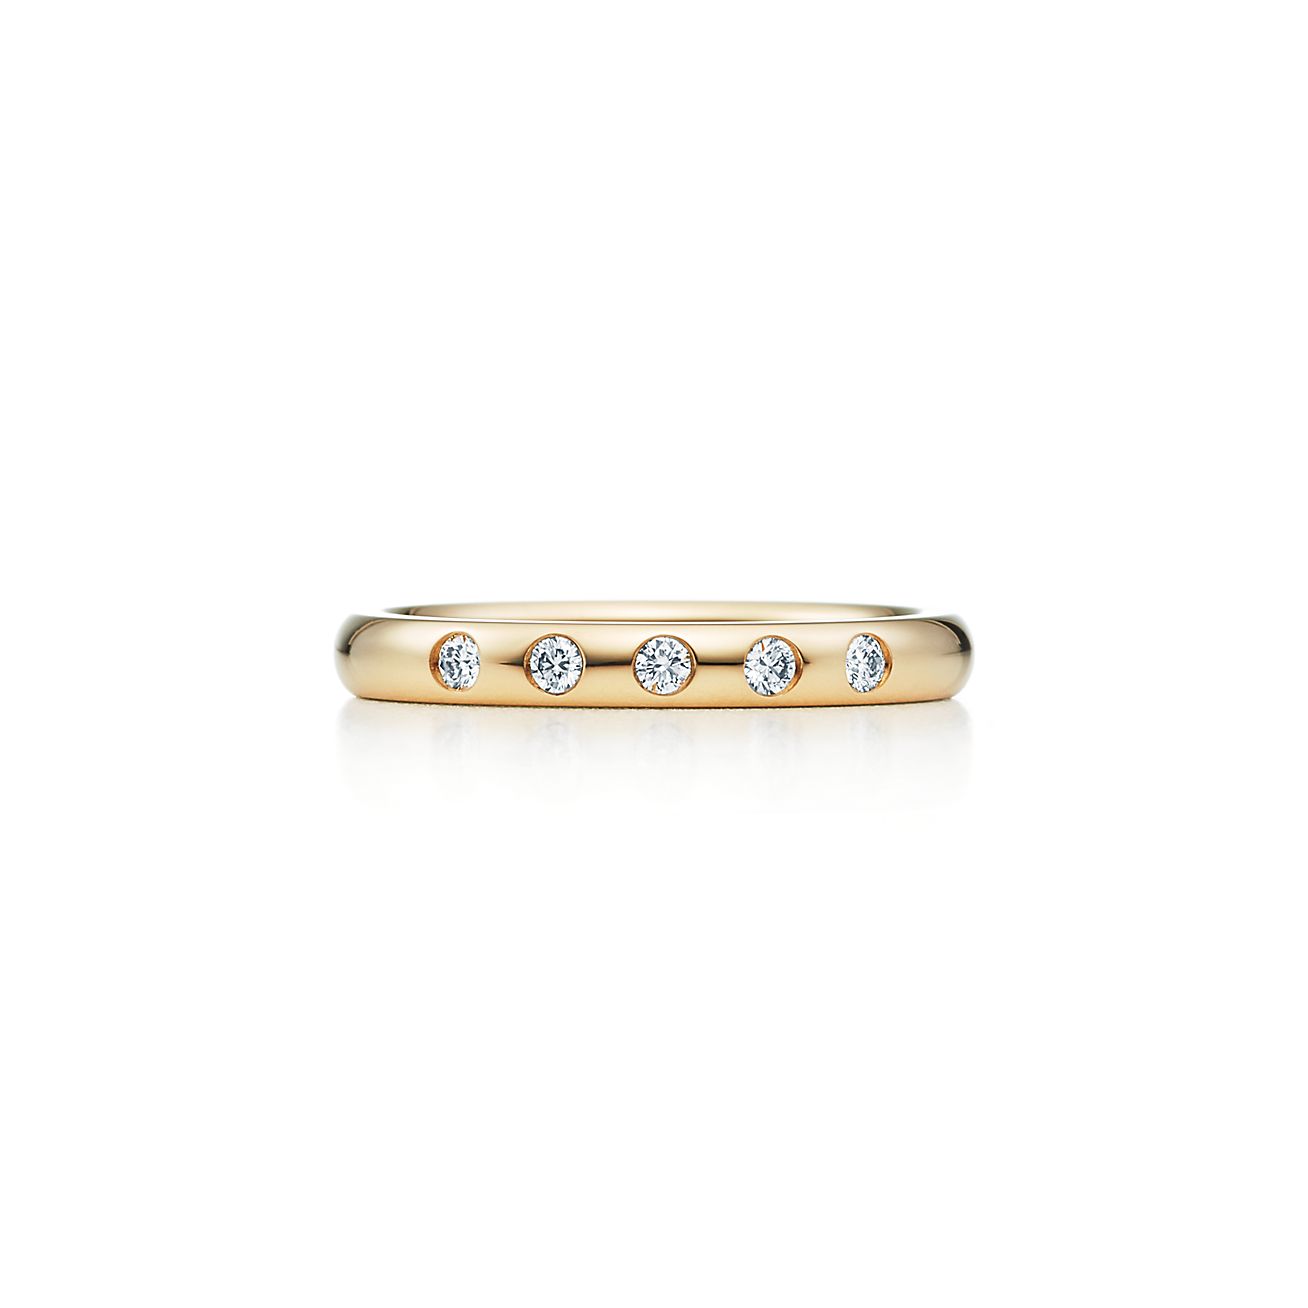 エルサ・ペレッティ スタッキング バンドリング ダイヤモンド 18Kゴールド | Tiffany & Co.